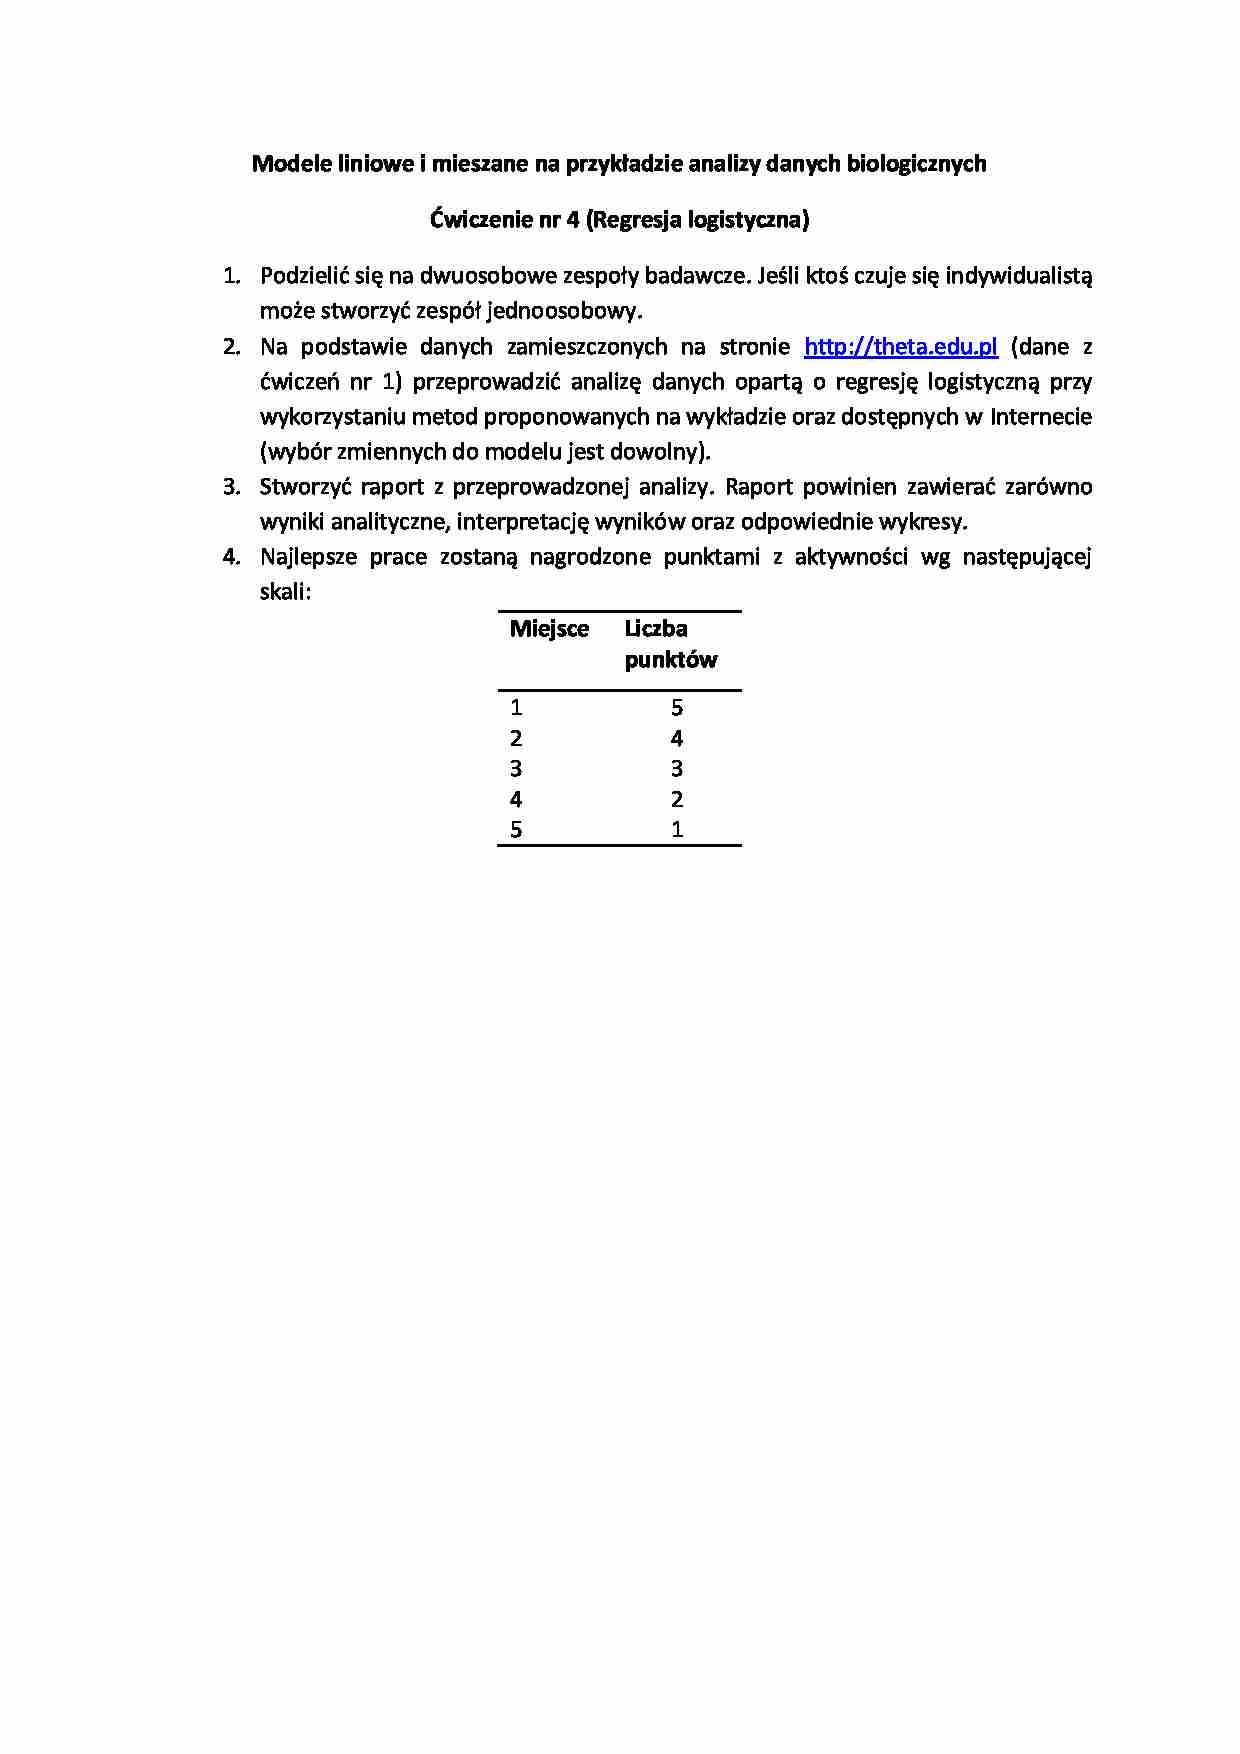 Modele liniowe i mieszane - ćwiczenie 4 - strona 1